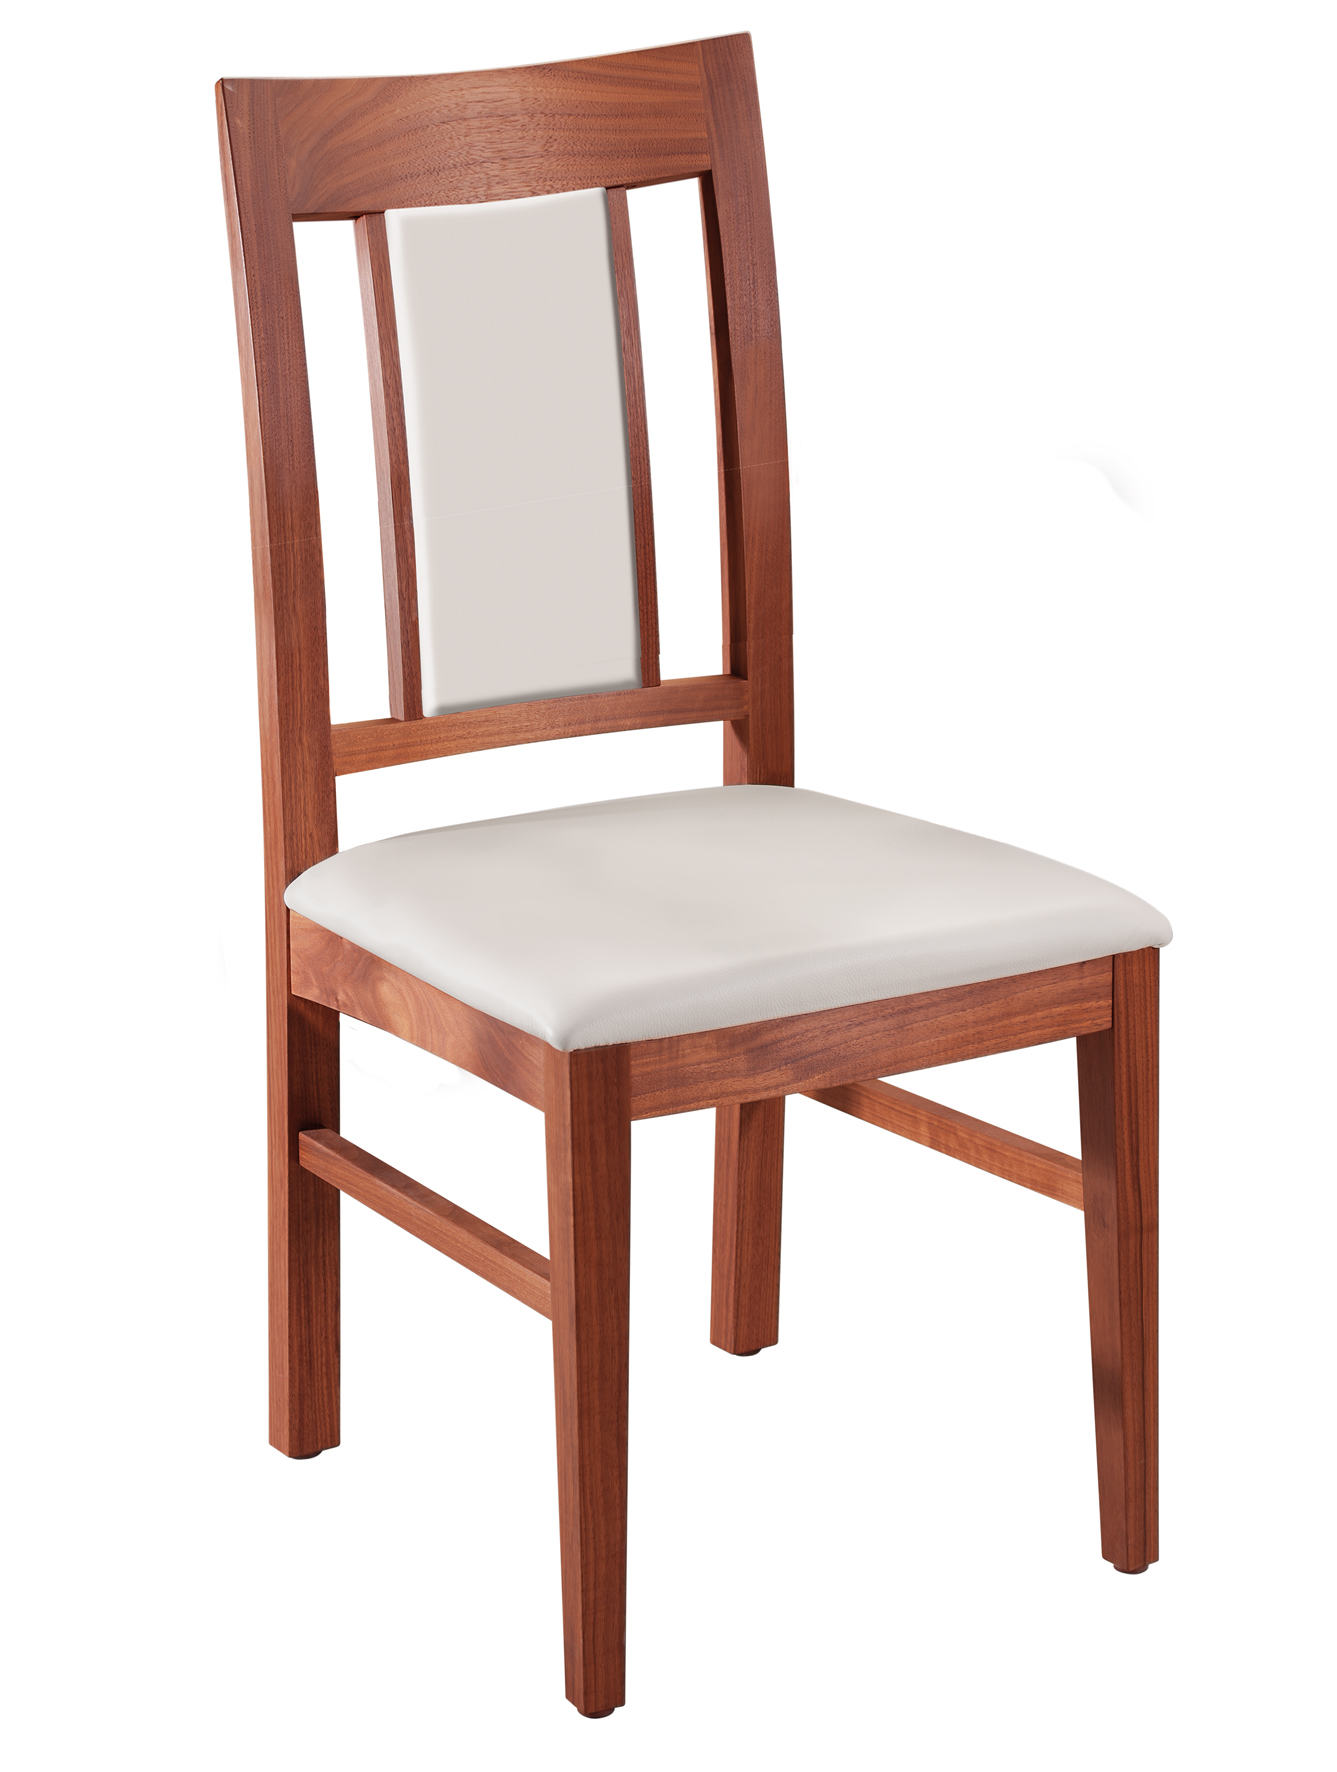 CARESSE Stuhl mit Polstersitz und hohem Polsterteil im Rücken